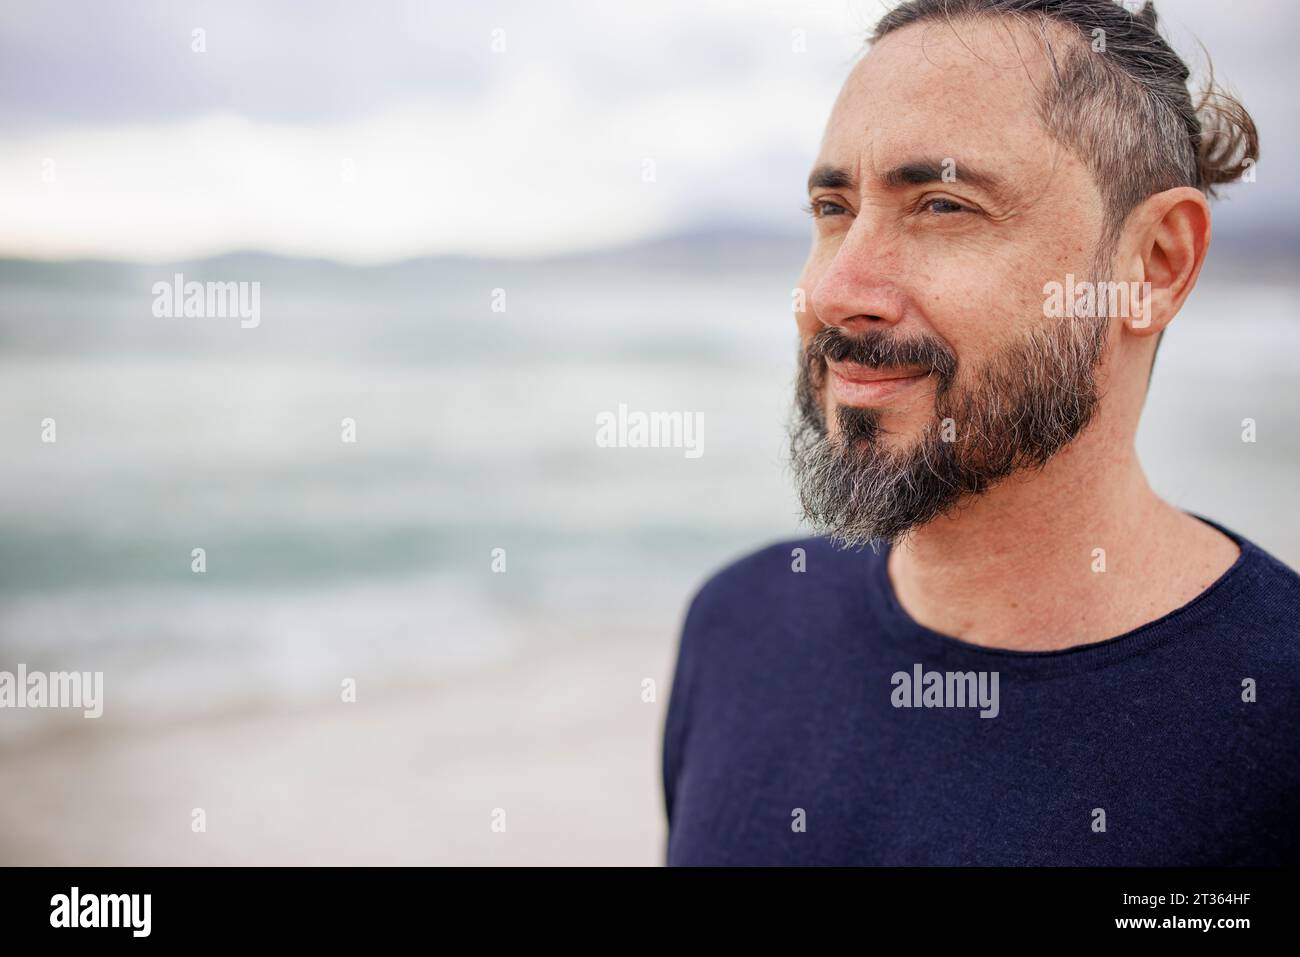 Besinnlicher Mann mit Bart am Strand Stockfoto